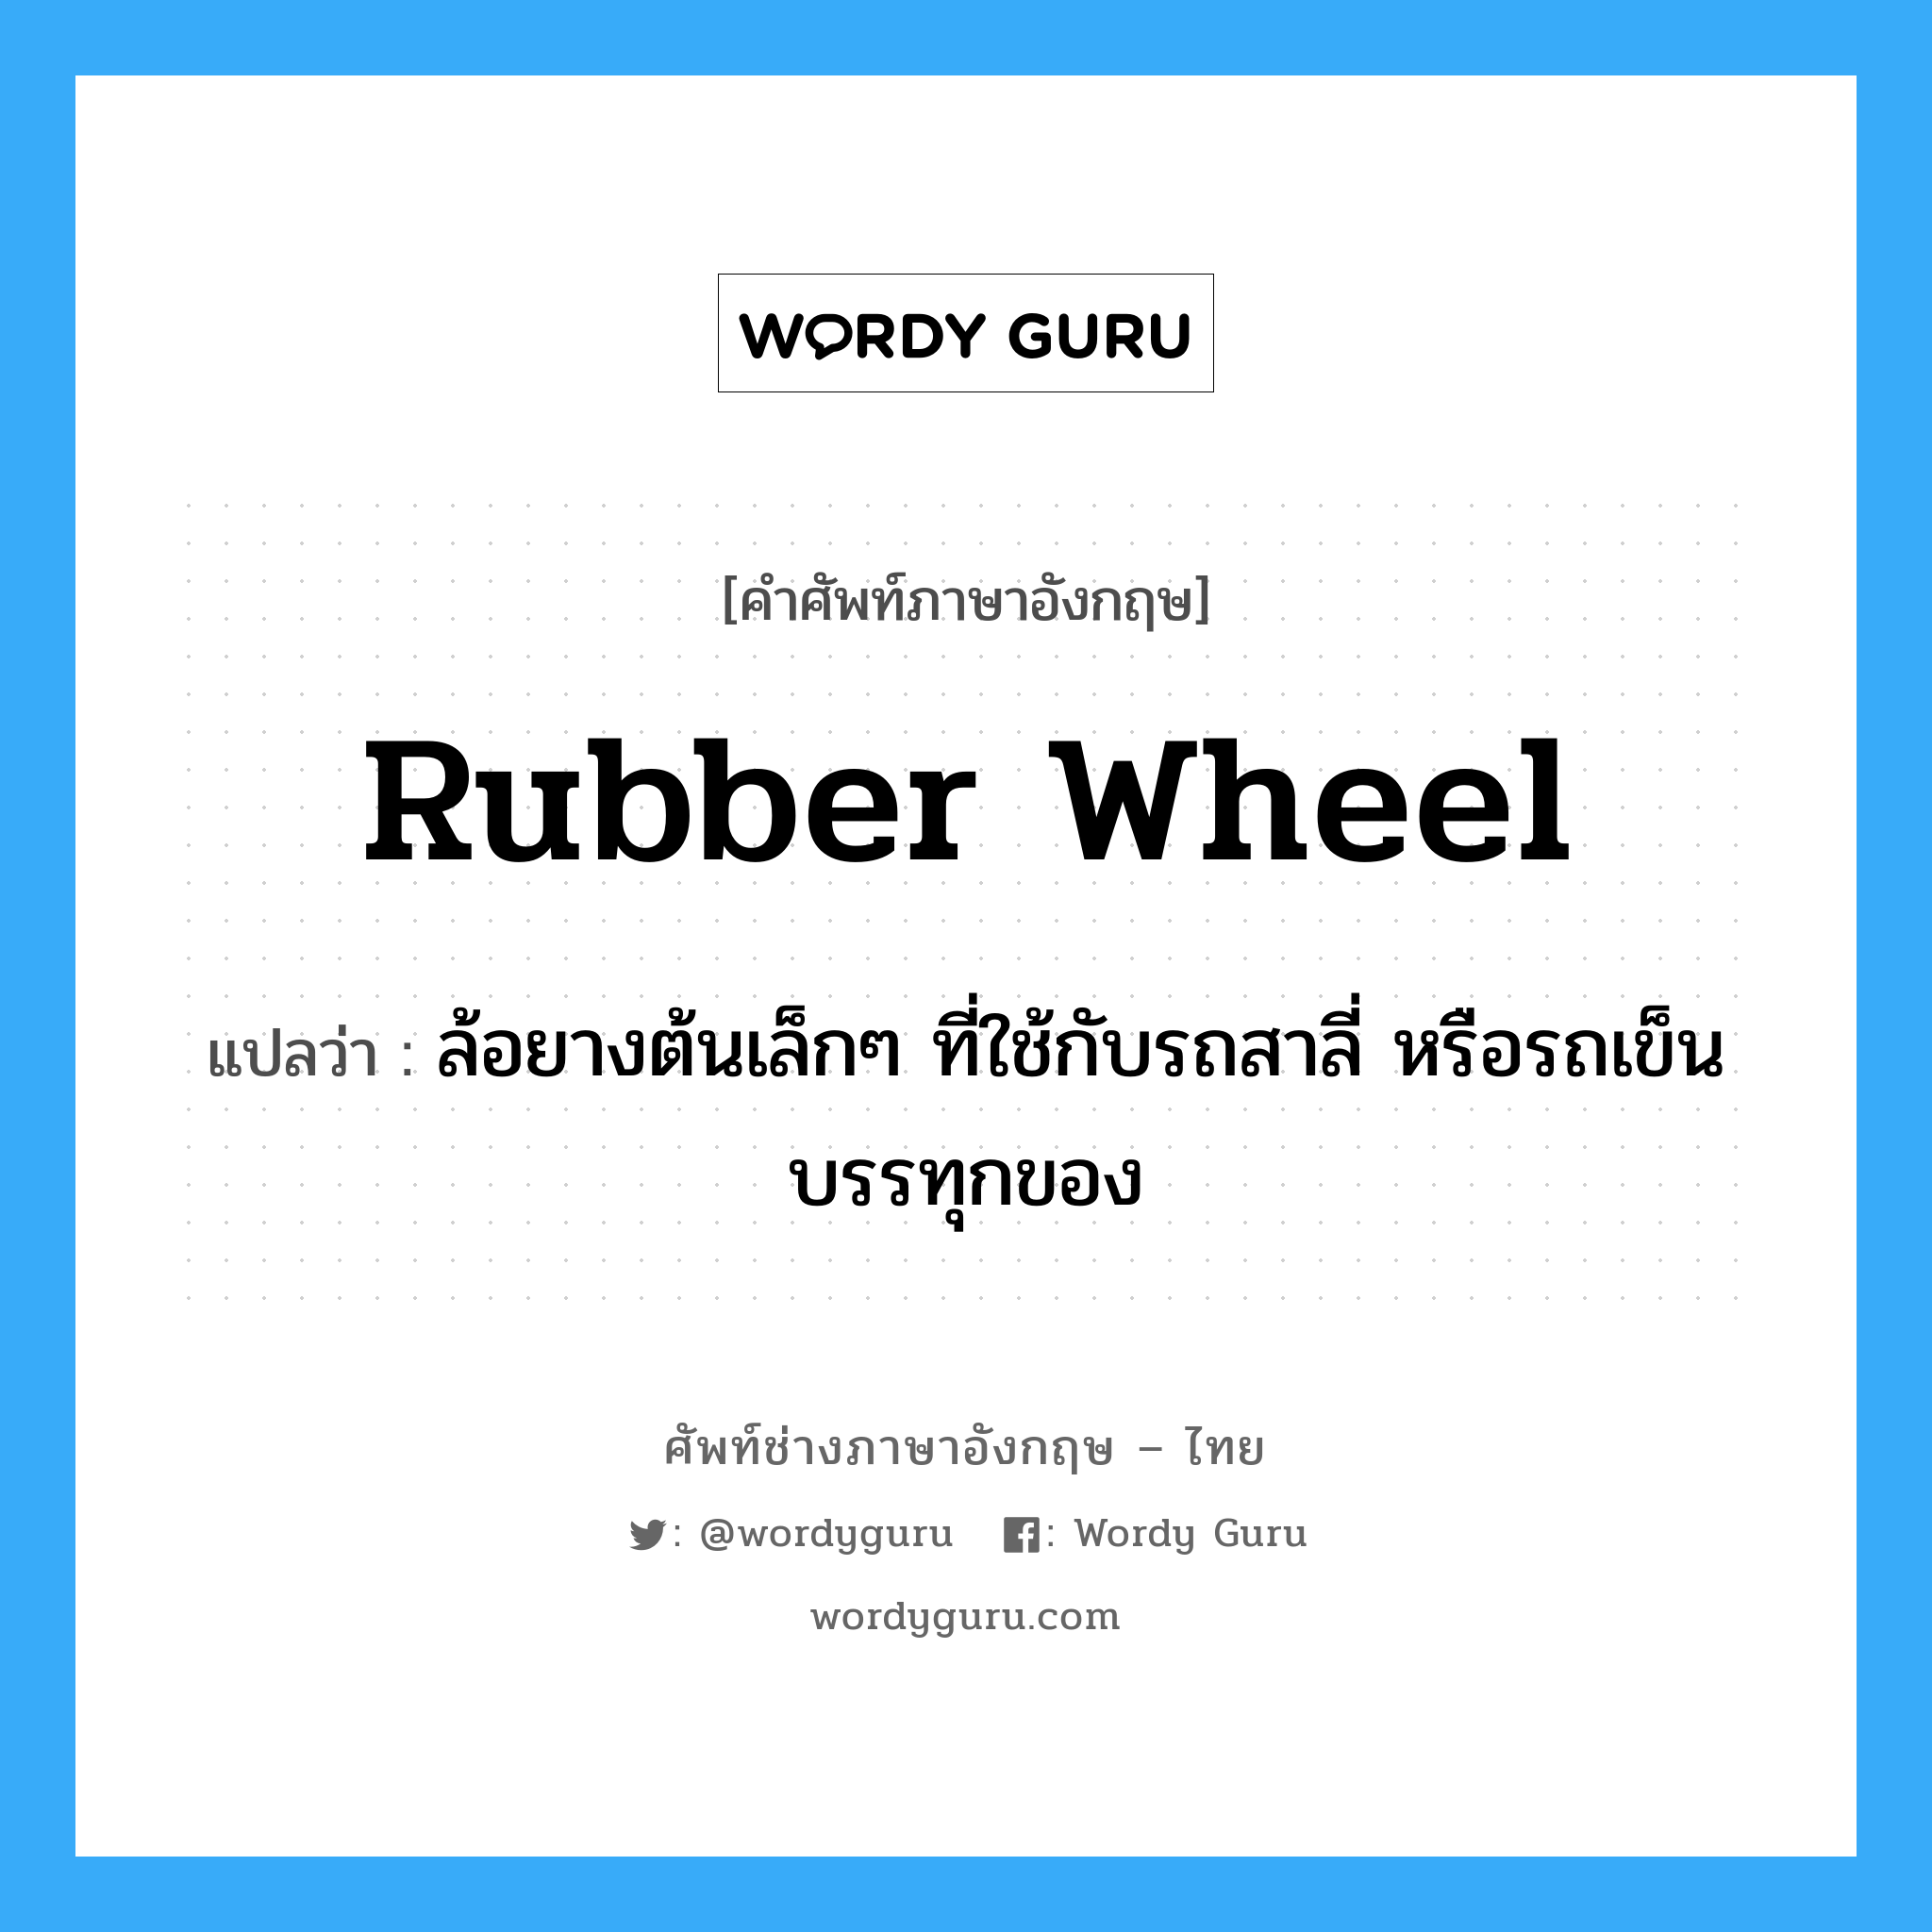 rubber wheel แปลว่า?, คำศัพท์ช่างภาษาอังกฤษ - ไทย rubber wheel คำศัพท์ภาษาอังกฤษ rubber wheel แปลว่า ล้อยางต้นเล็กๆ ที่ใช้กับรถสาลี่ หรือรถเข็นบรรทุกของ